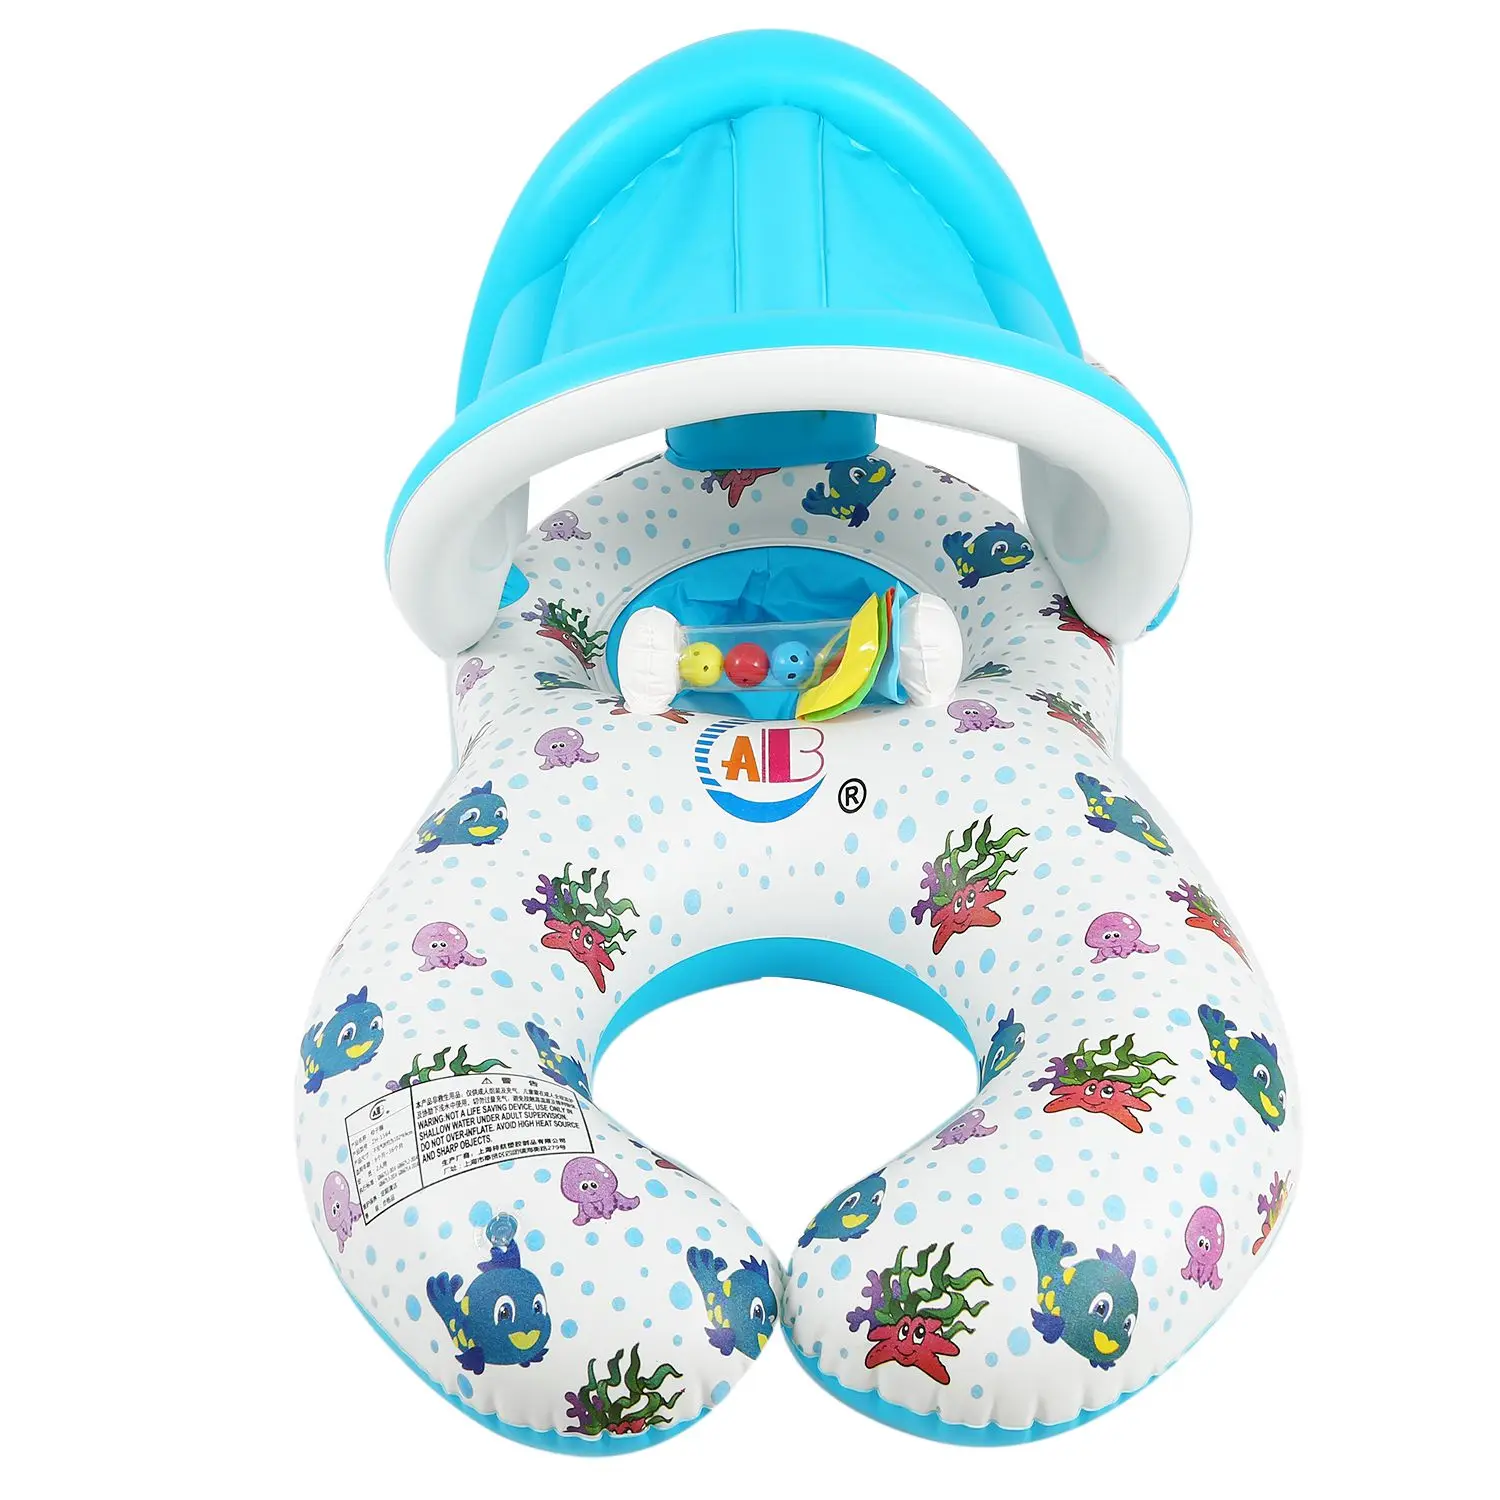 Безопасное мягкое Надувное плавающее кольцо для мамы и ребенка, детское сиденье, двойной человек, плавательный бассейн